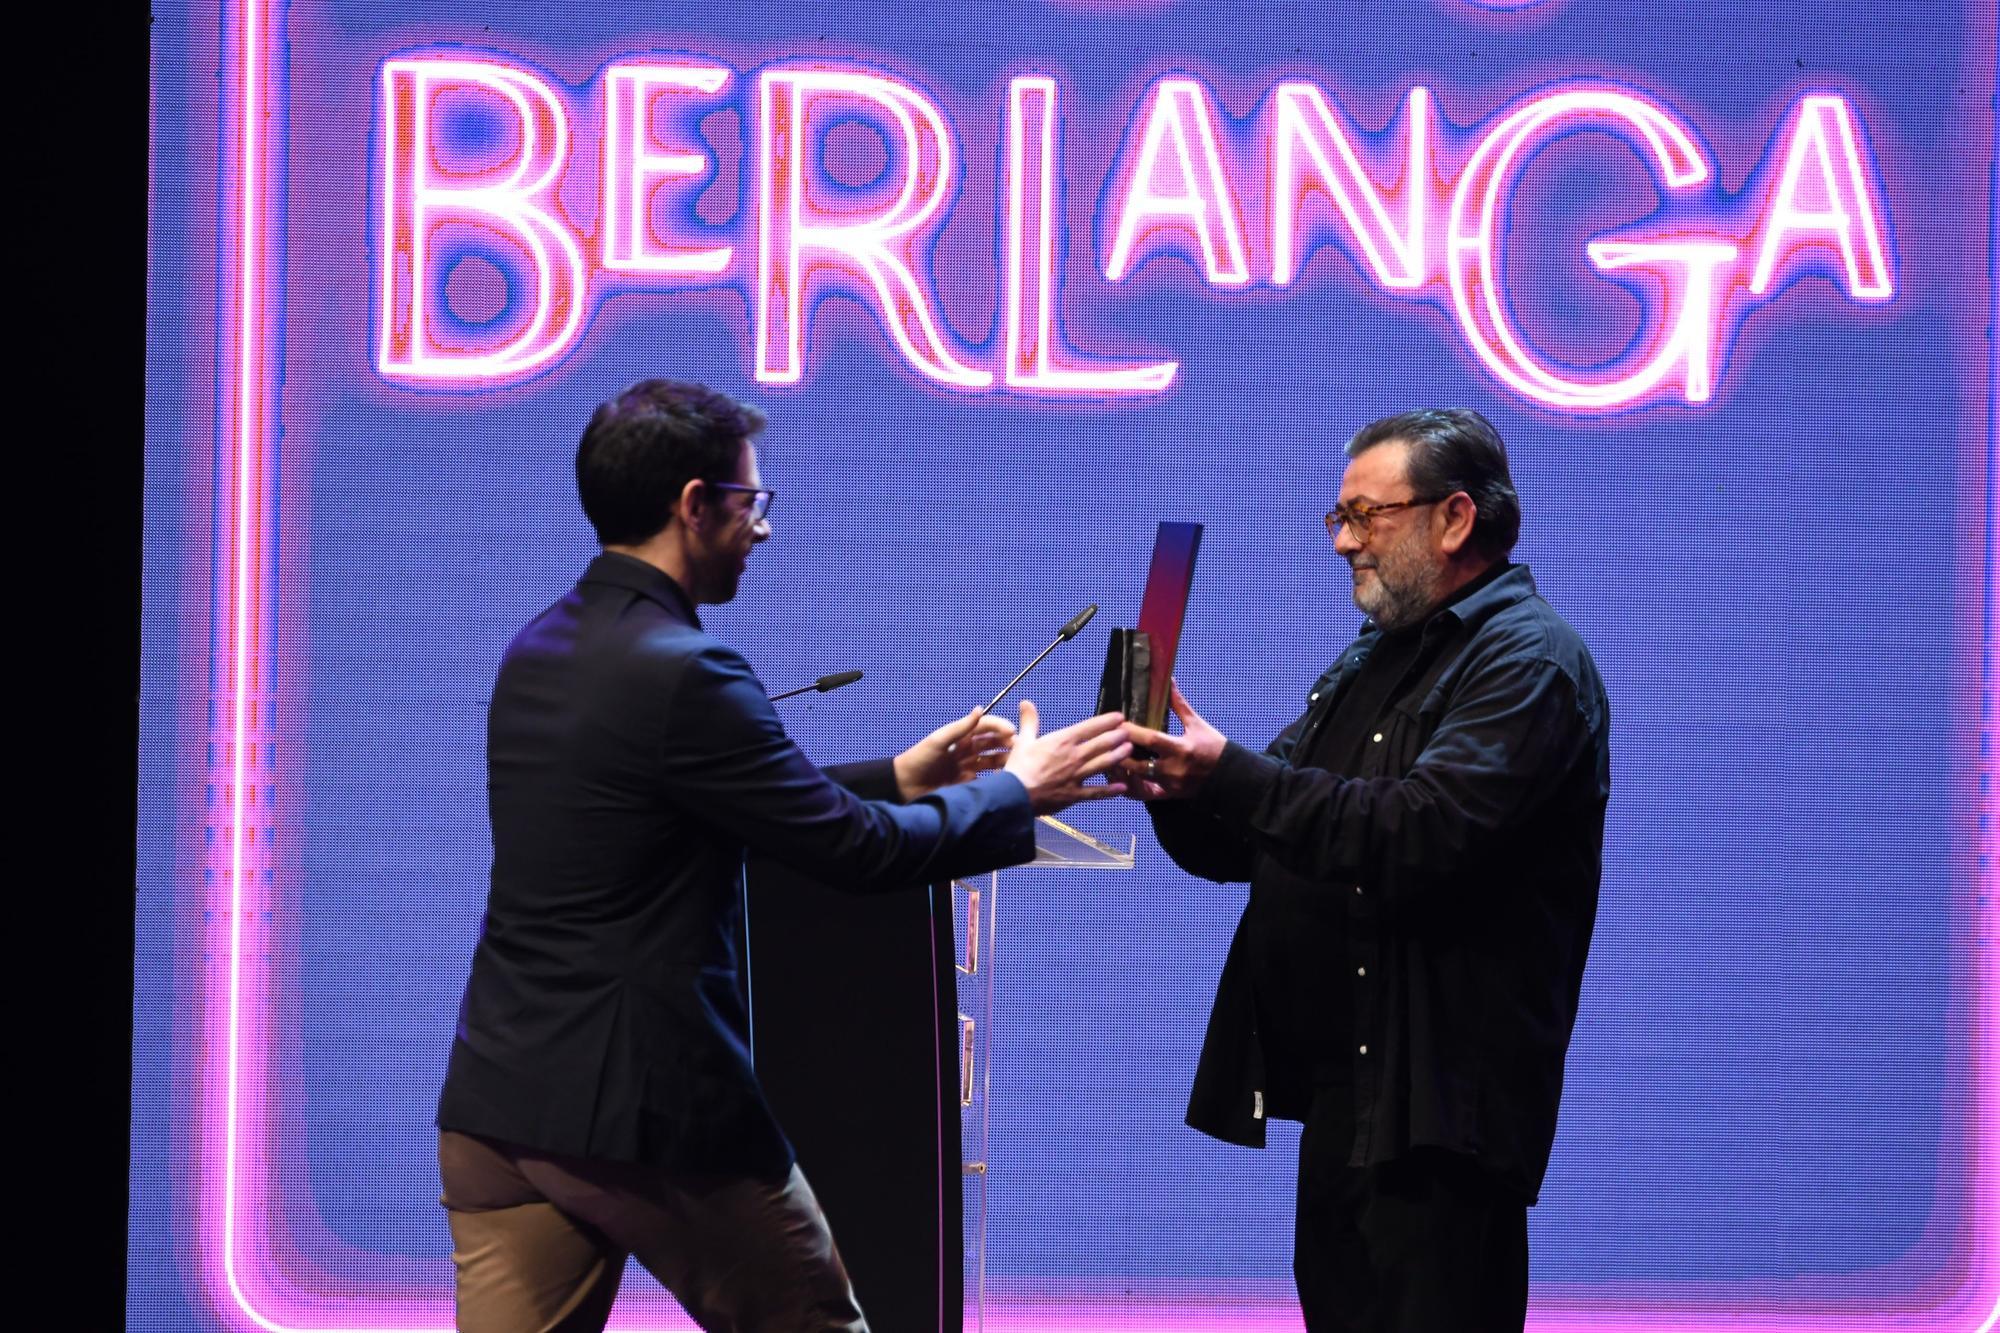 Els Premis Berlanga es lliuren a Castelló